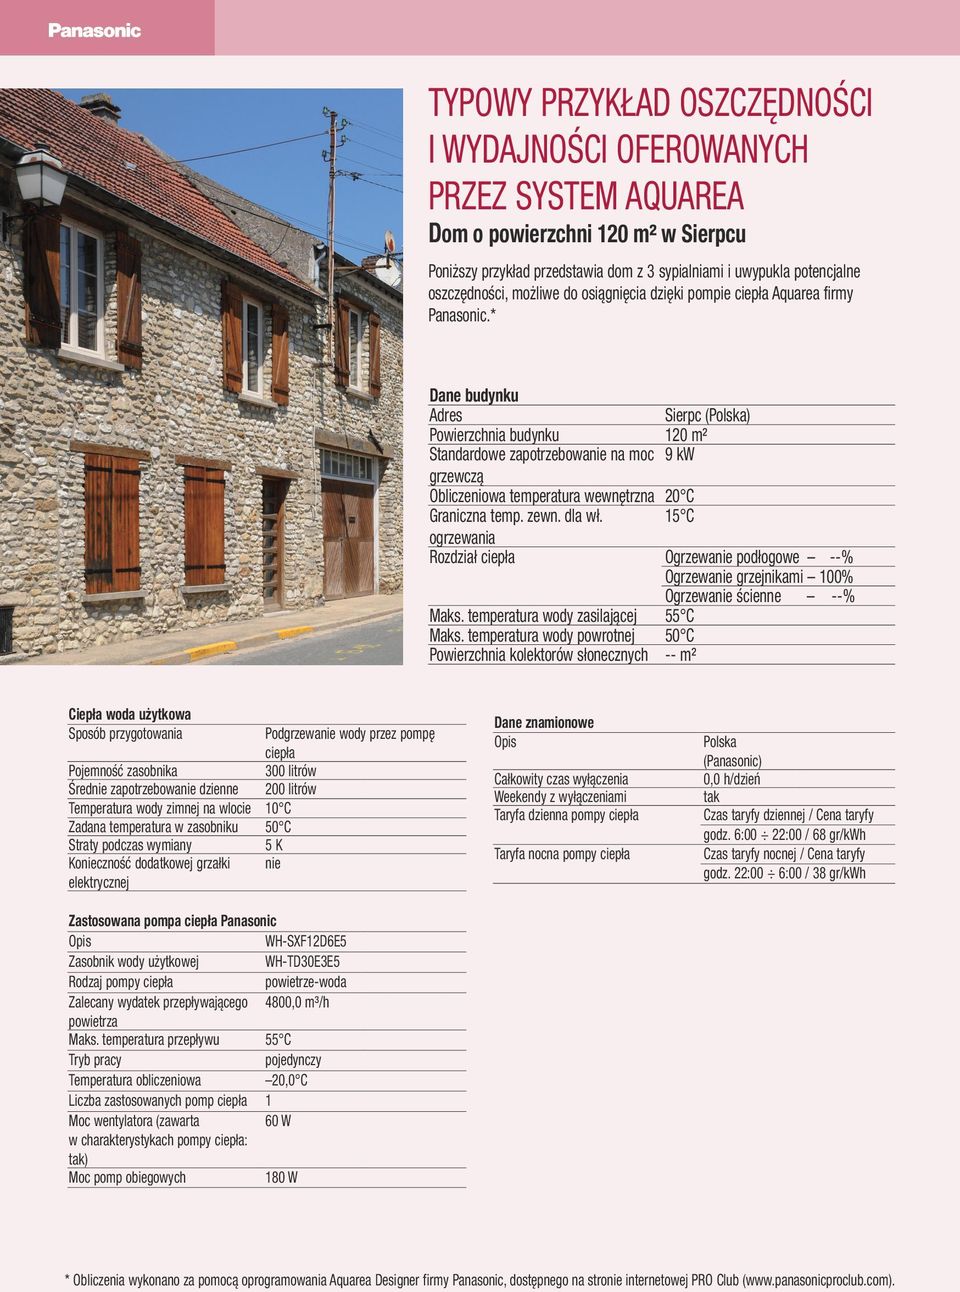 * Dane budynku Adres Sierpc (Polska) Powierzchnia budynku 120 m² Standardowe zapotrzebowanie na moc 9 kw grzewczą Obliczeniowa temperatura wewnętrzna 20 C Graniczna temp. zewn. dla wł.